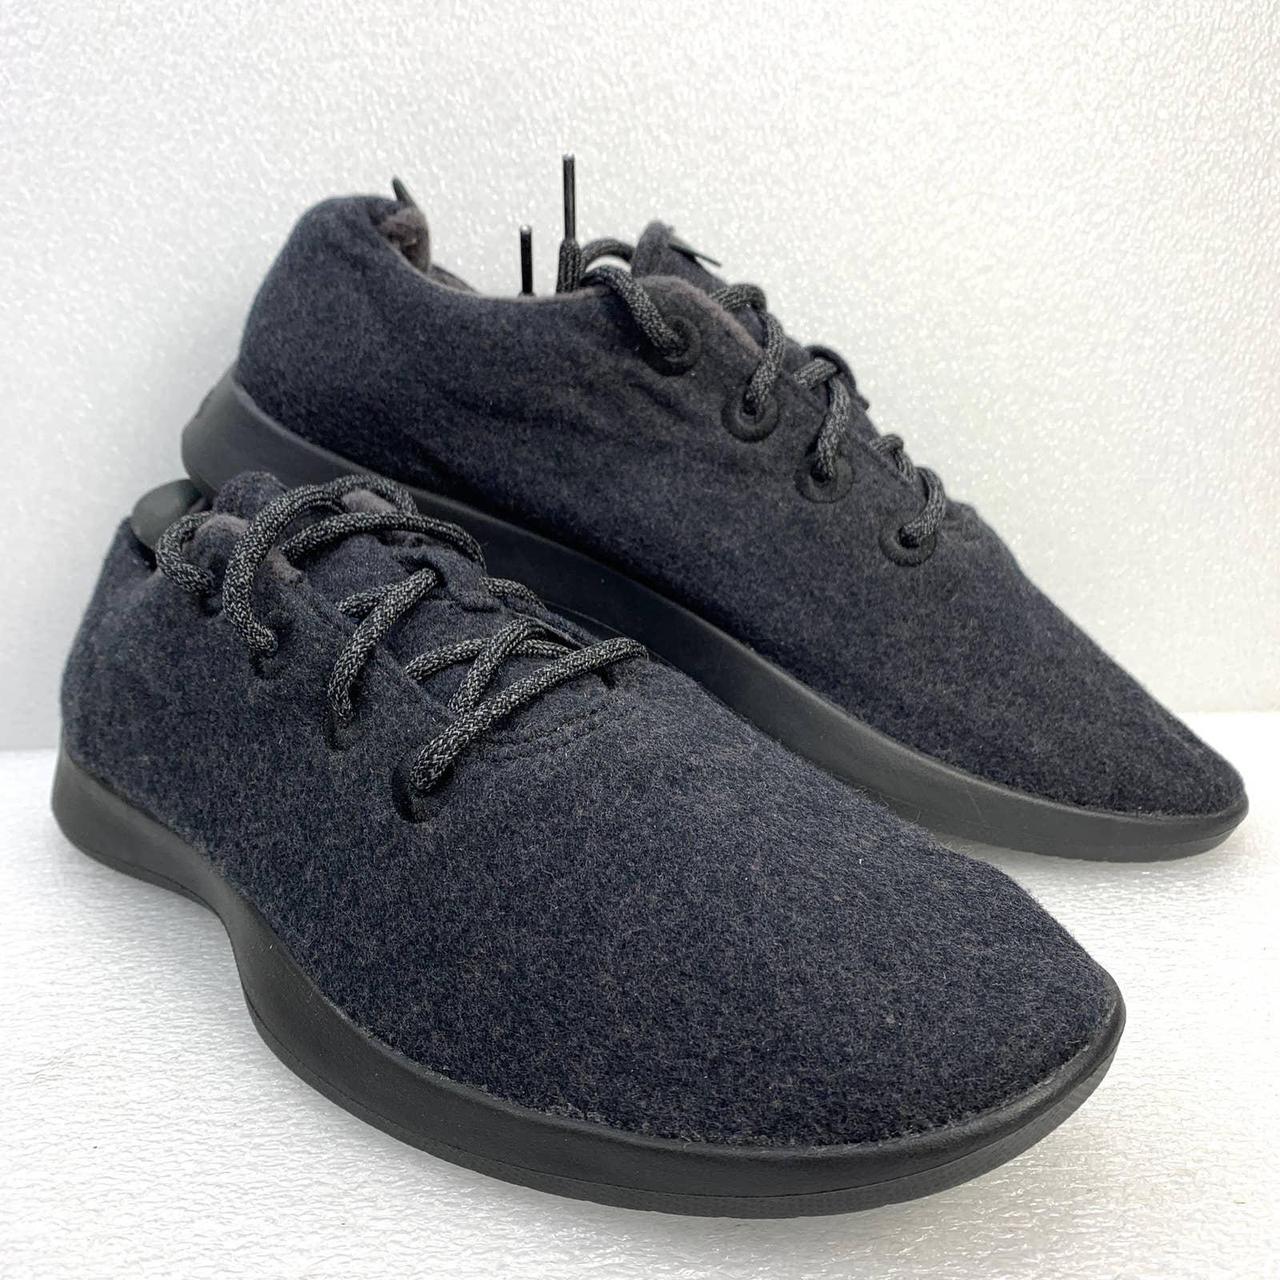 Allbirds Merino Wool Runners Shoes Lightweight... - Depop